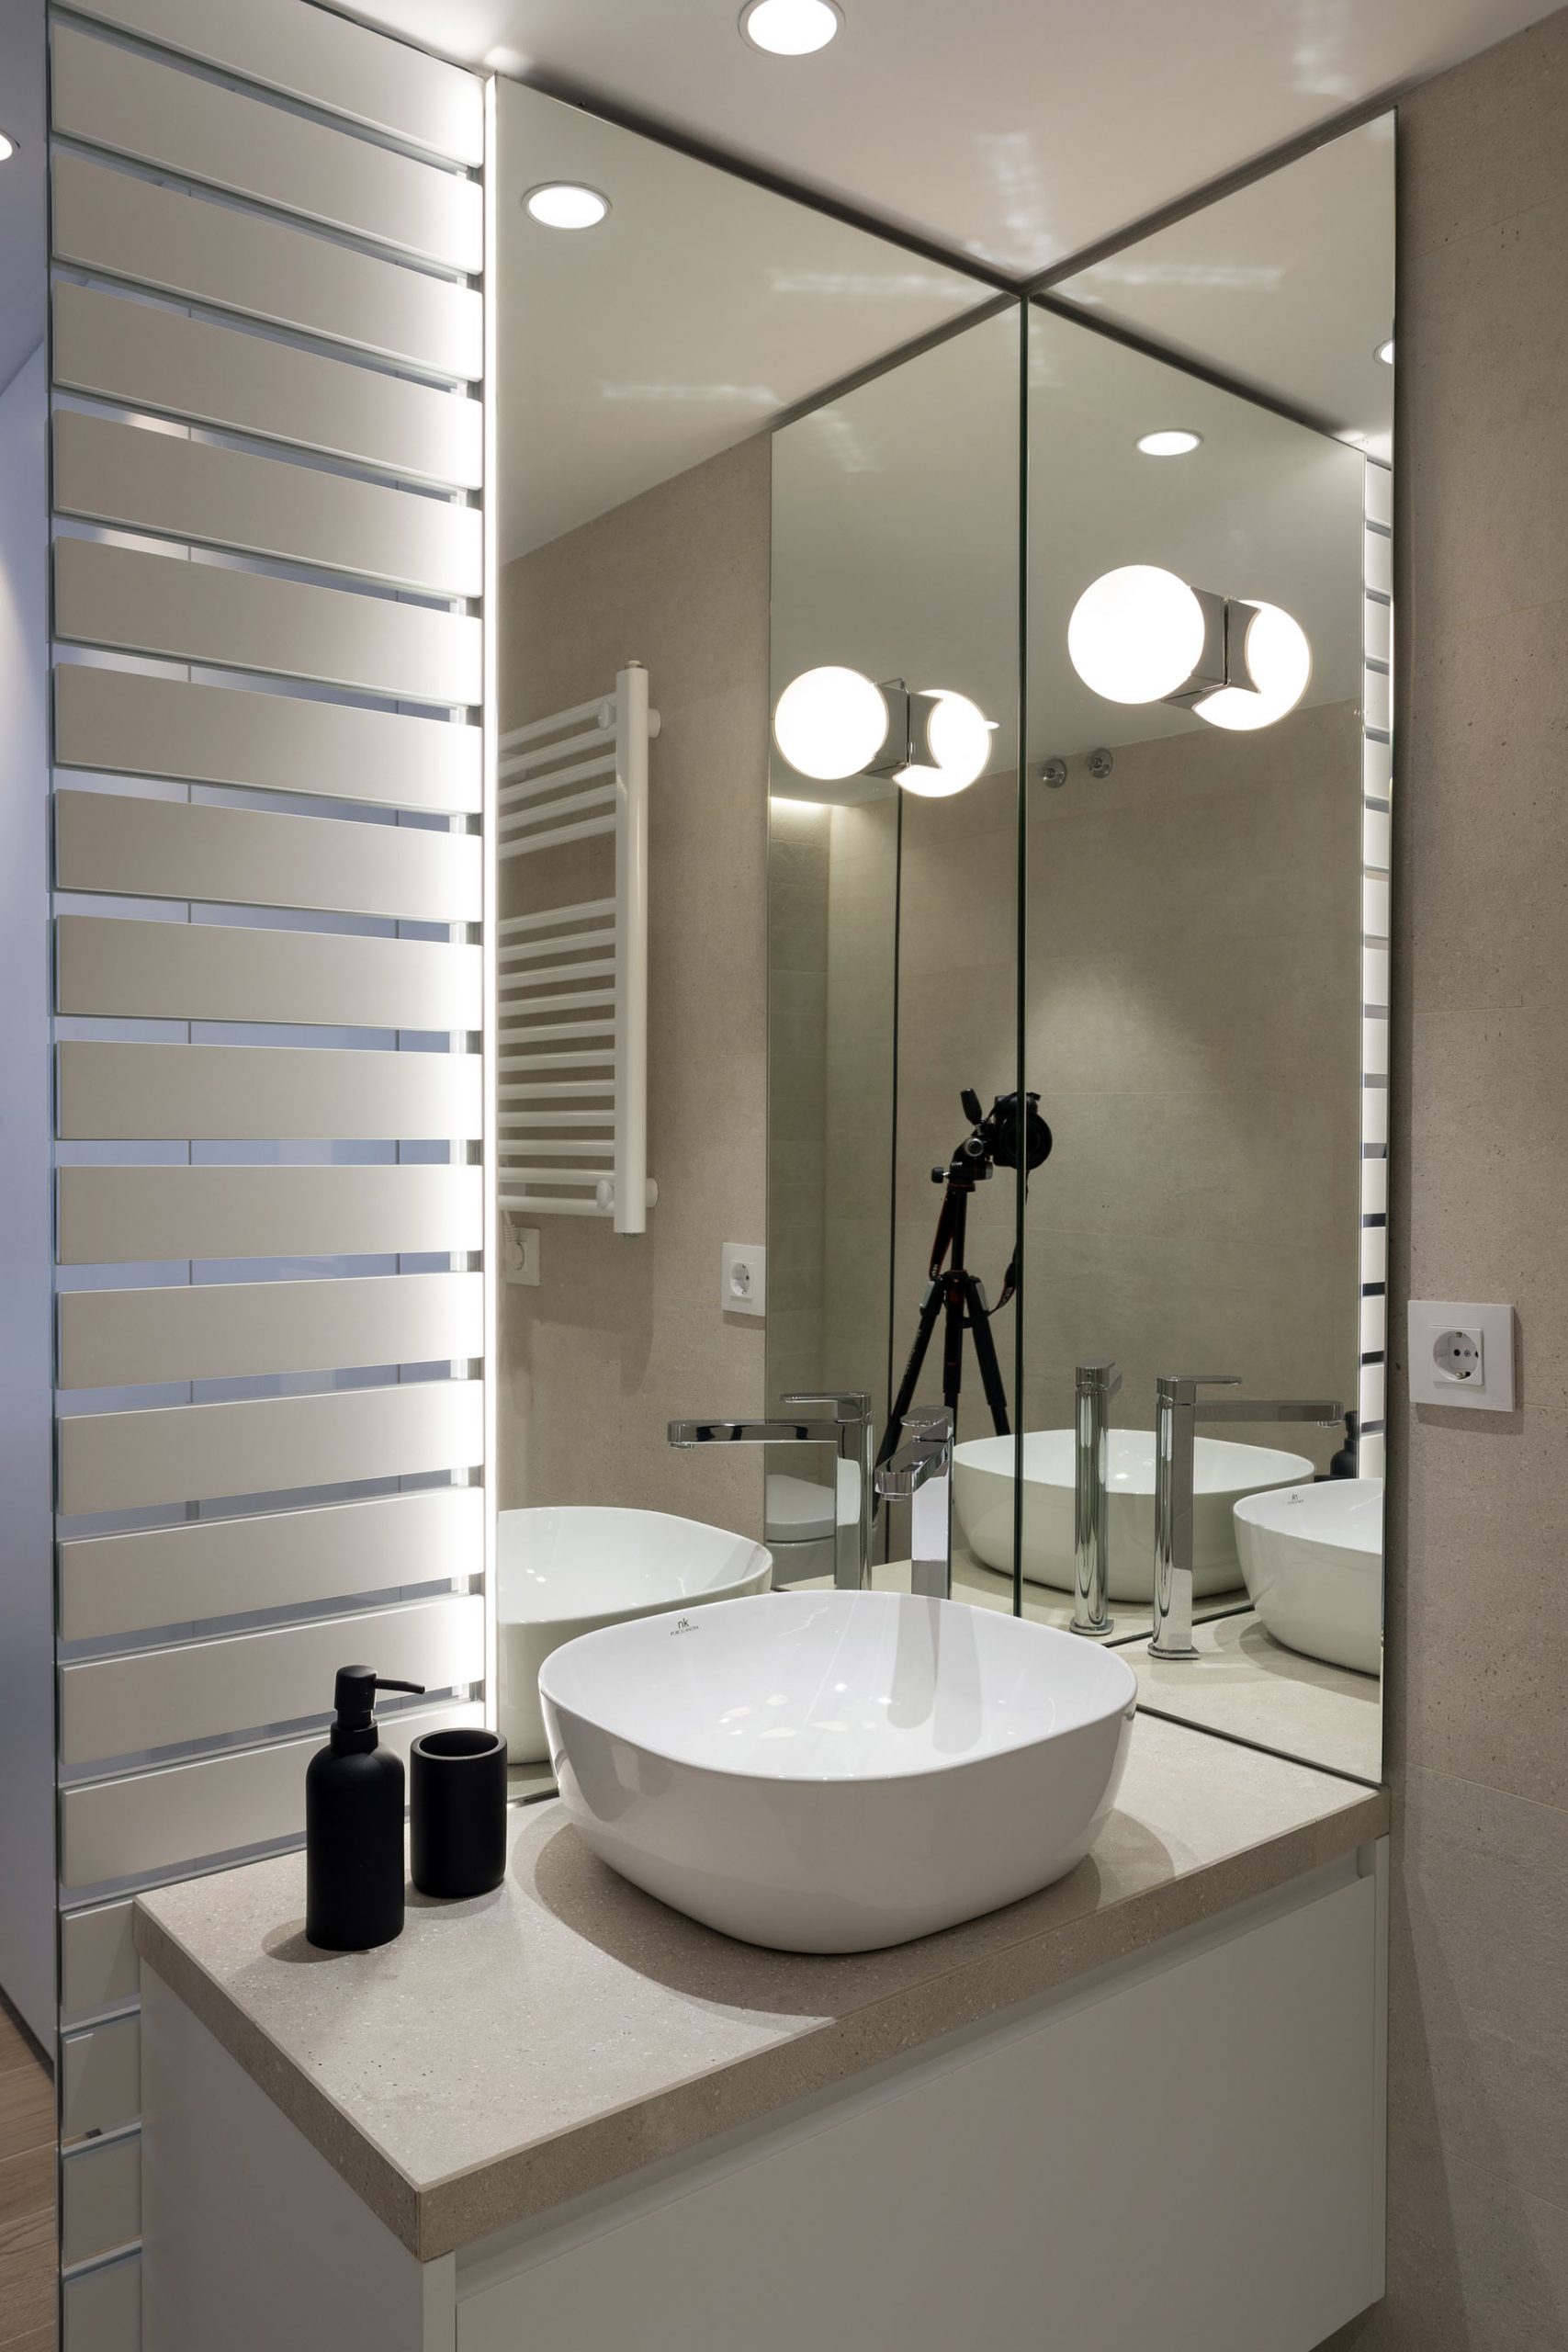 Cómo iluminar baño? | Diseño Interior